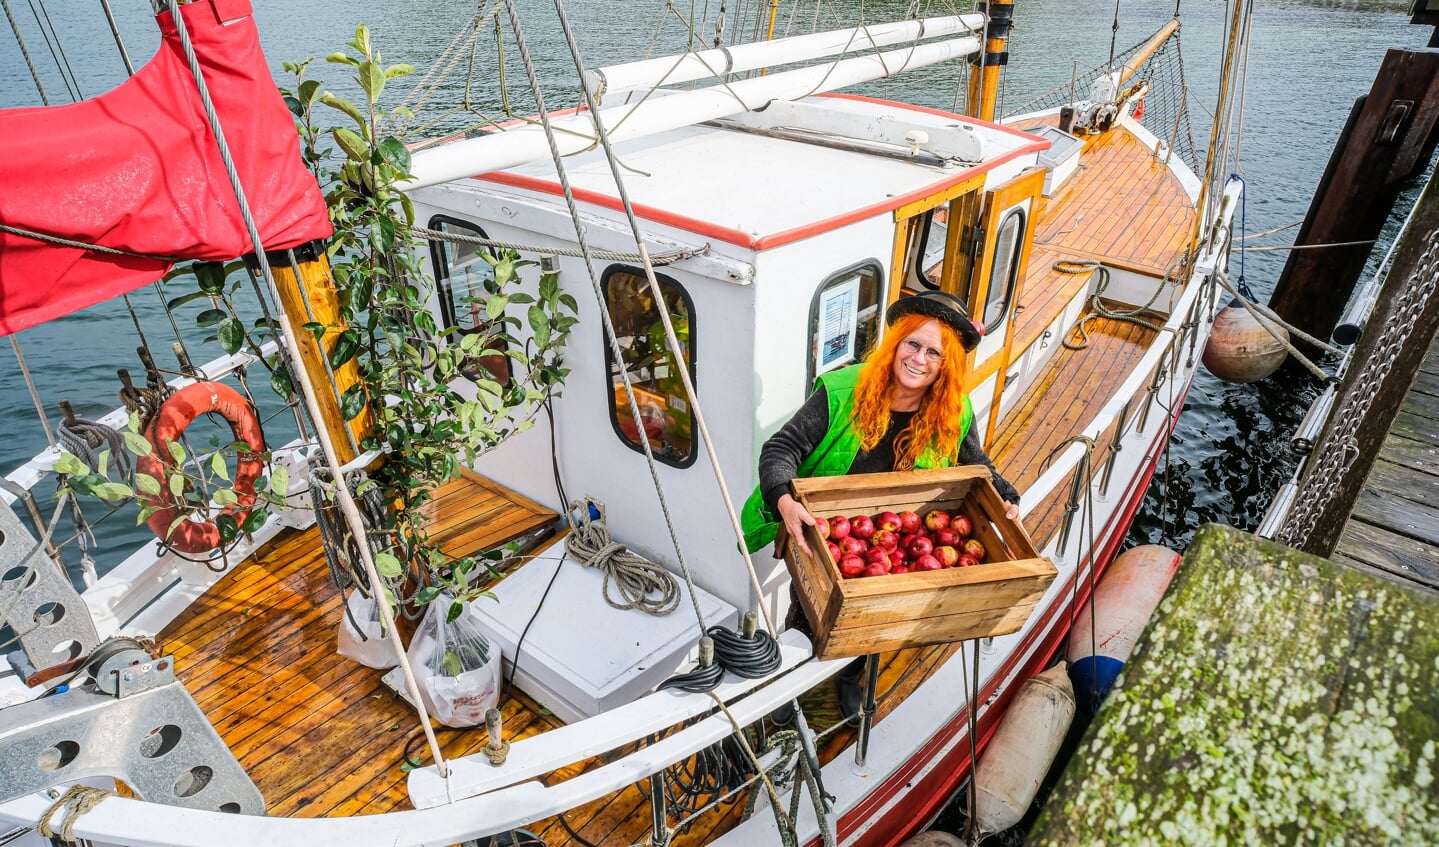 Æbledronningen Karin Baum kom sejlende med æbletræer og æbler fra Gråsten, da hun plantede æbletræer i Lyksborg Slotshave lørdag. (Tryk for at se flere fotos). Foto: